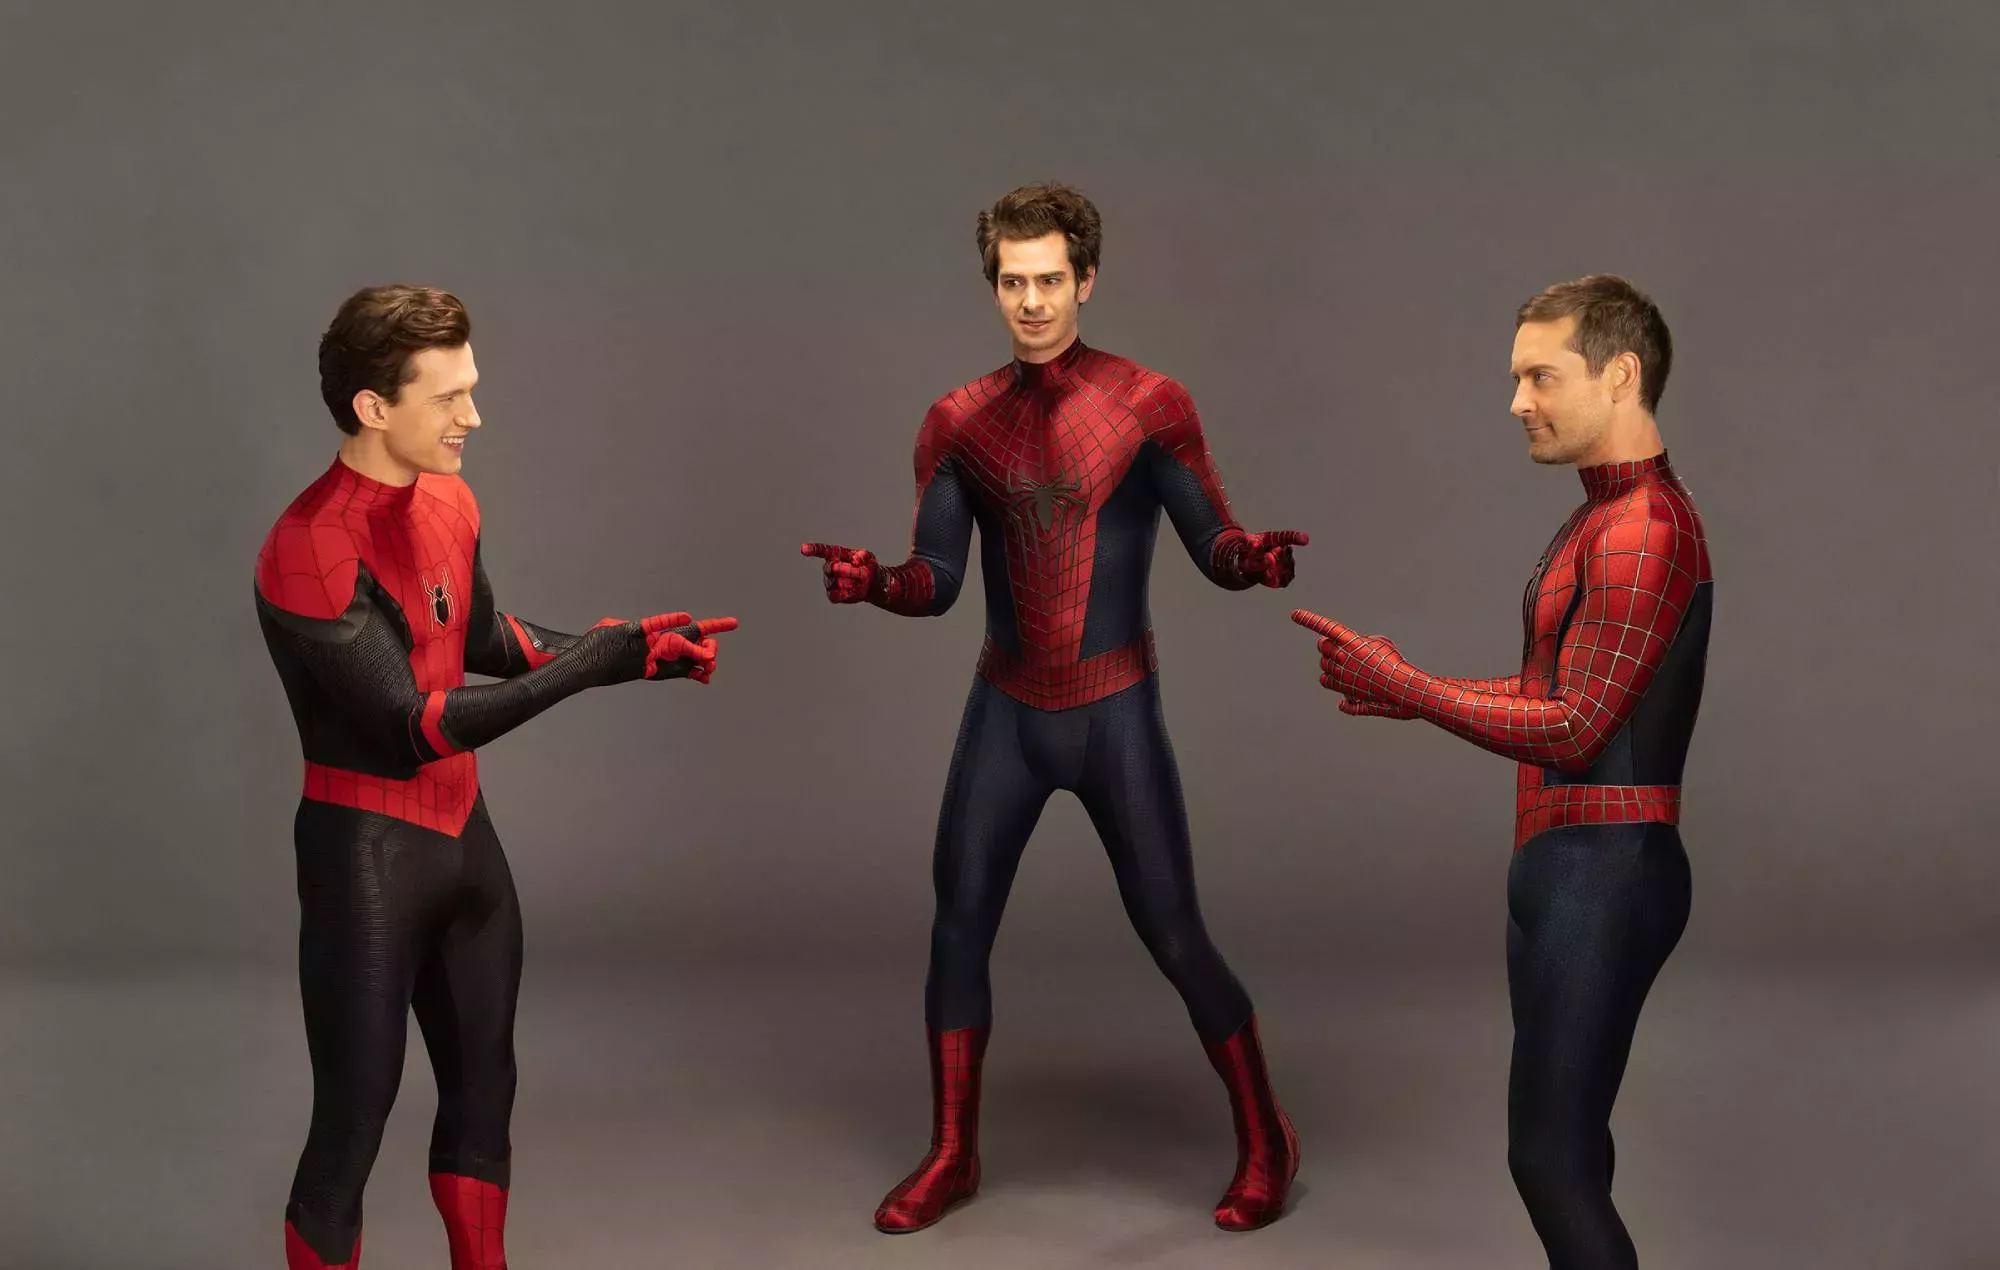 Los actores de 'Spider-Man' Tom Holland, Tobey Maguire y Andrew Garfield recrean el clásico meme